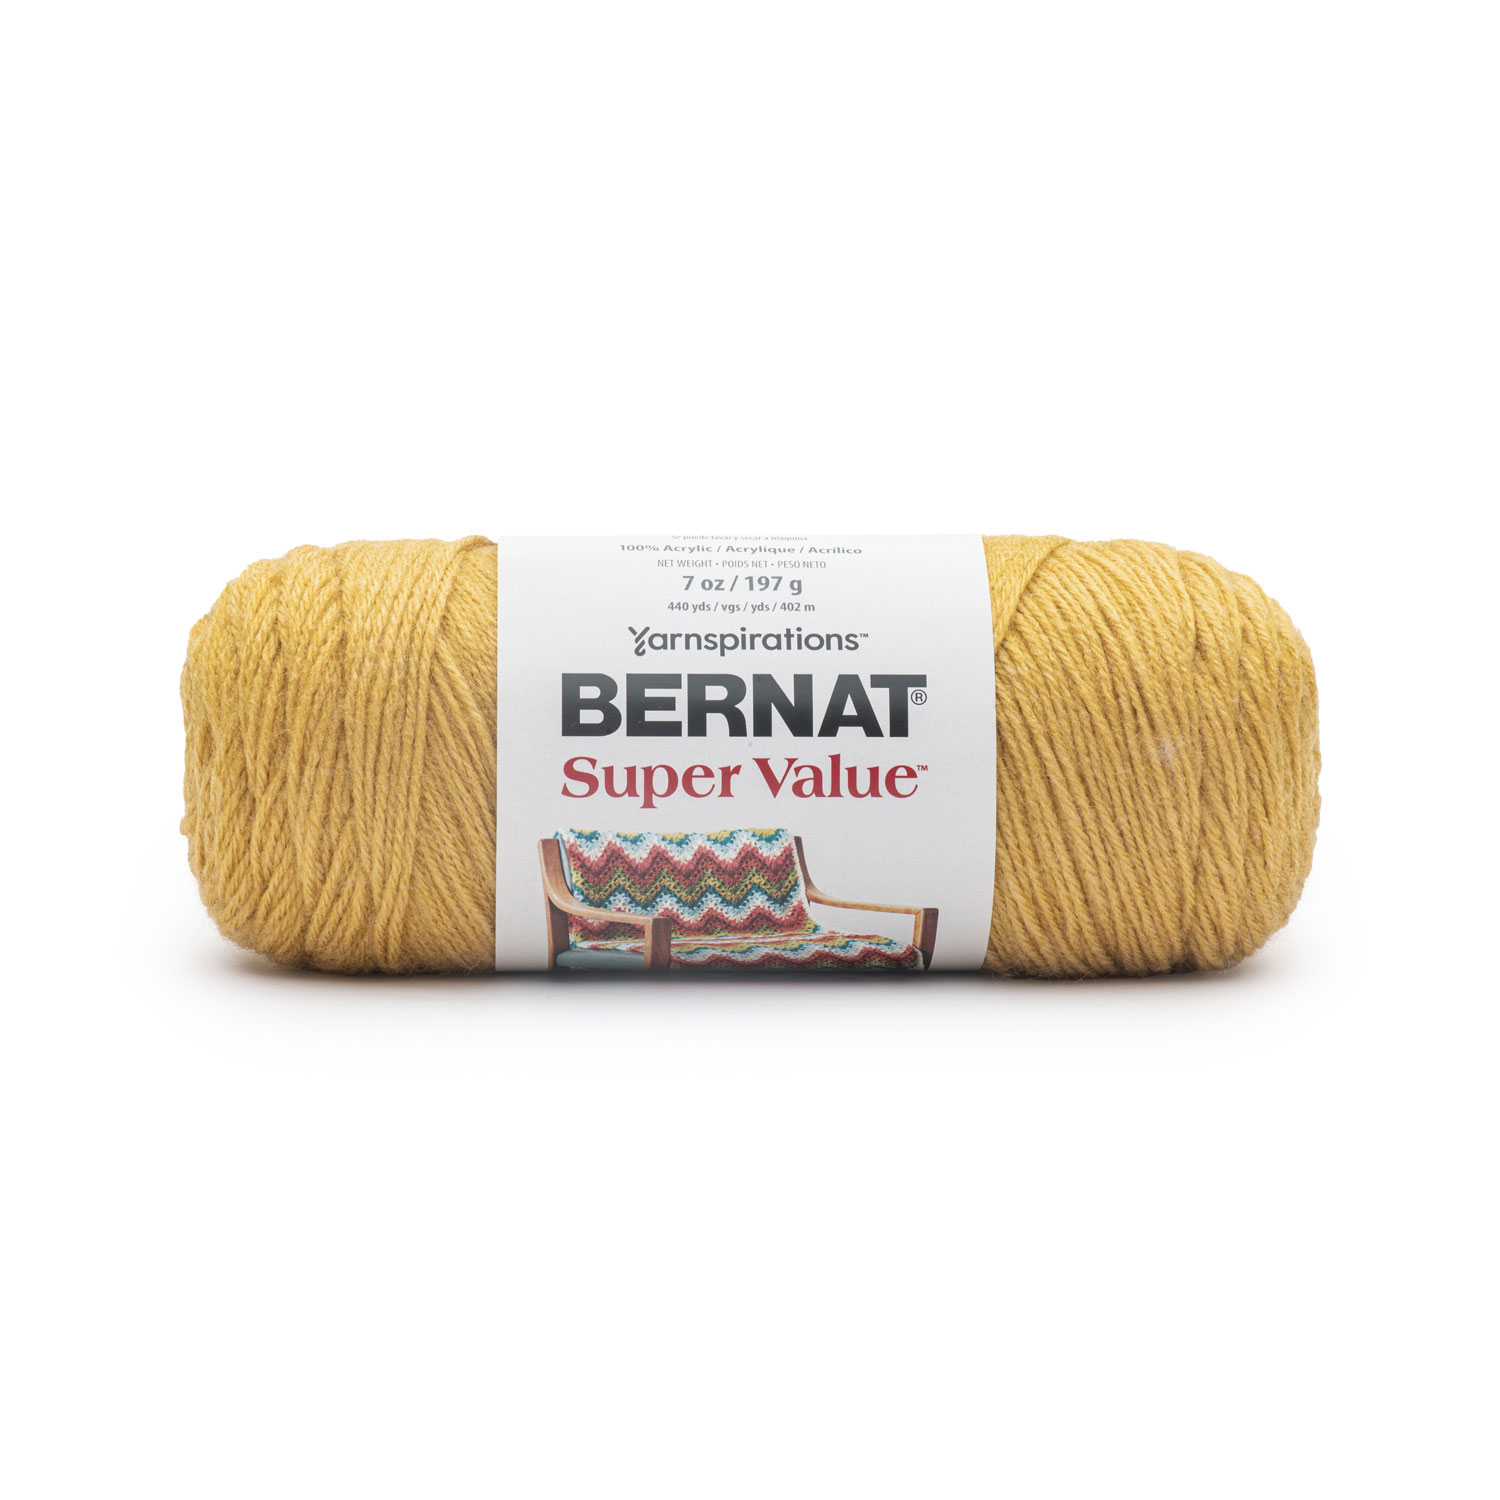 Bernat Super Value - Laine acrylique, curry